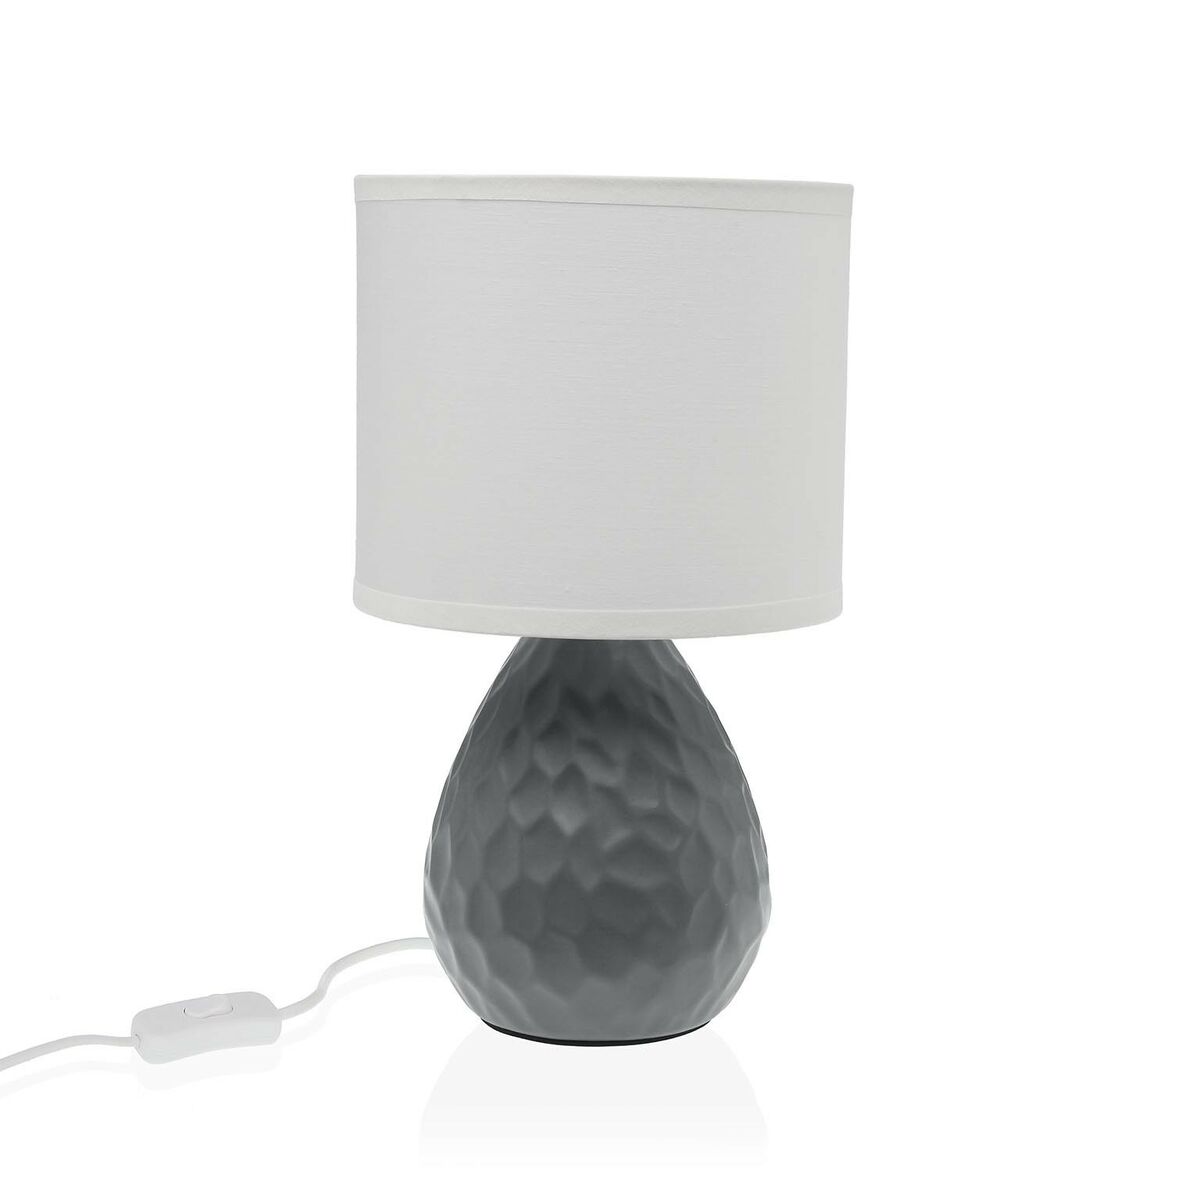 Desk lamp grey white ceramic